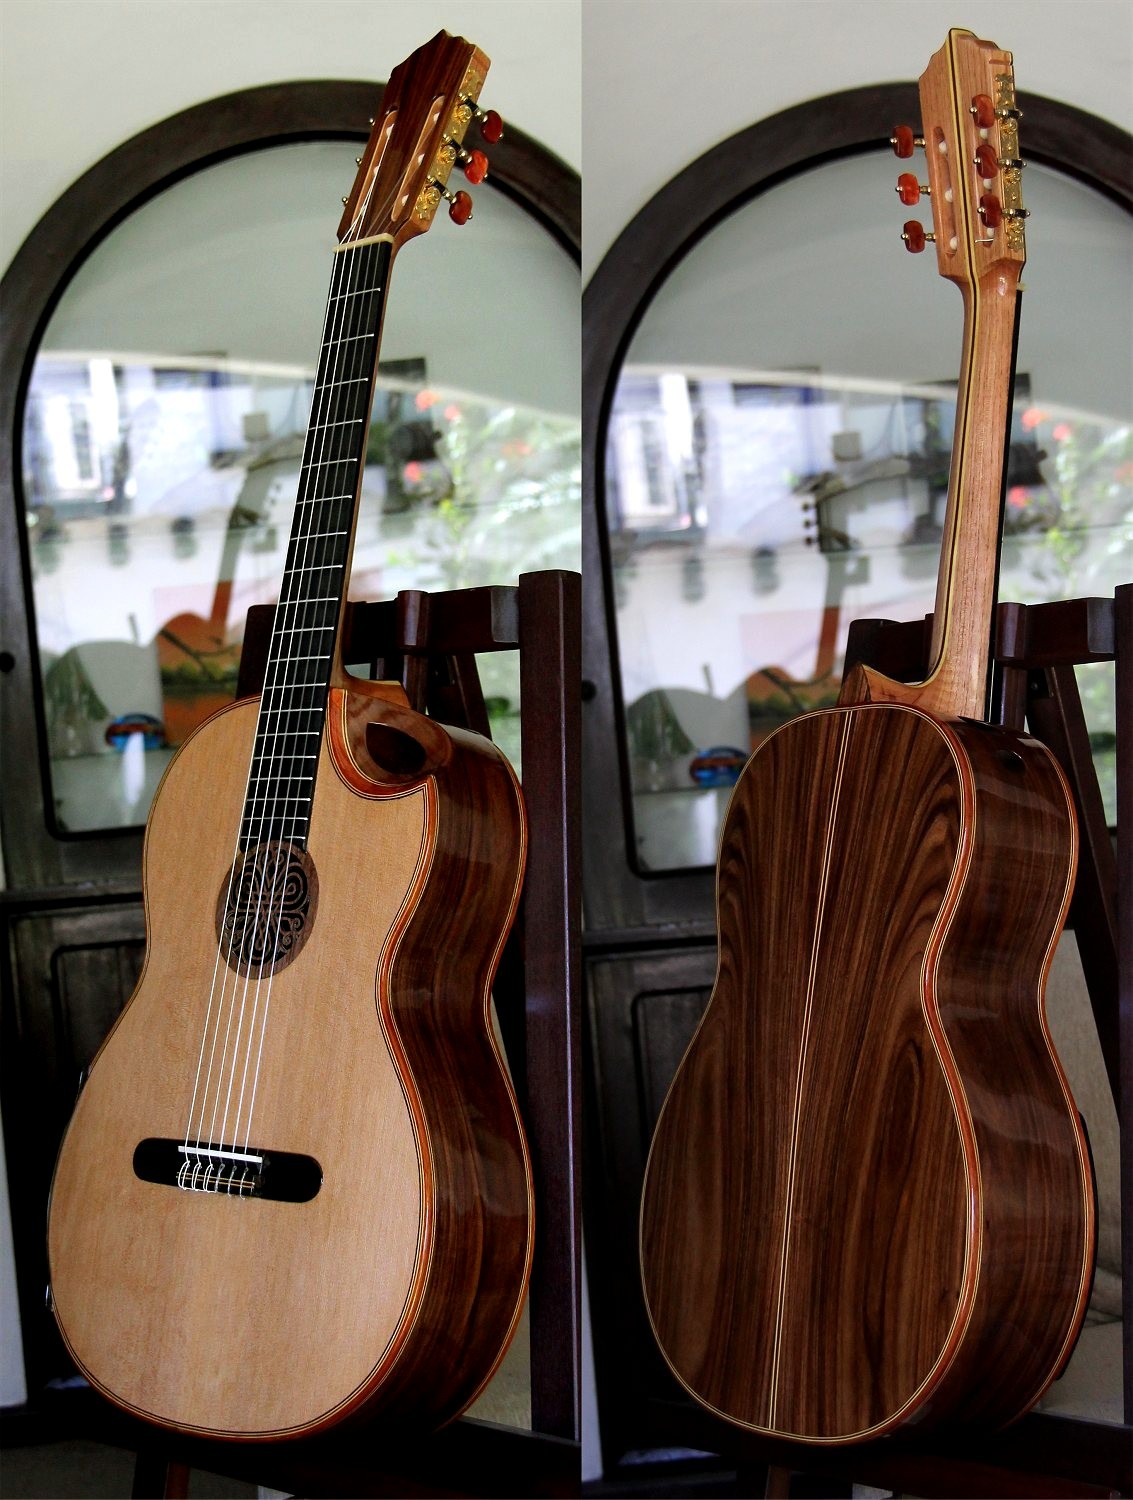 Pau Ferro B&S Cedar Top, “Da Vinci Series” Concert Classical Guitar